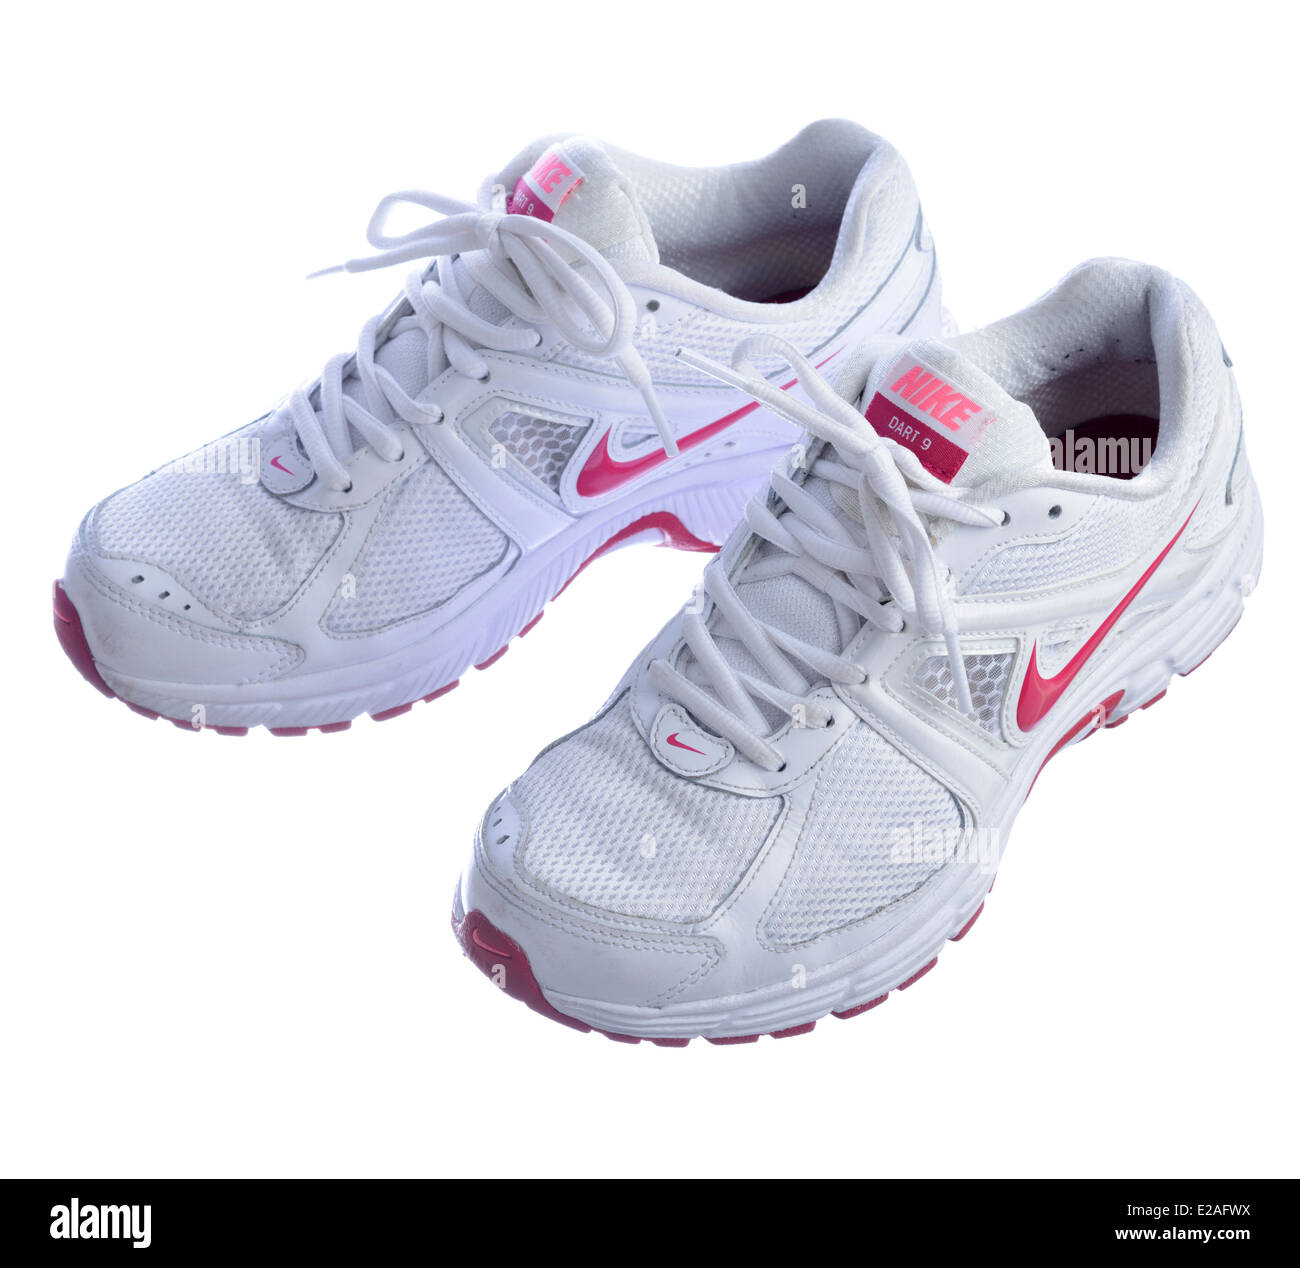 Nike Men's Dart 12 MSL Grey Running Shoes for Men - Buy Nike Men's Sport  Shoes at 25% off. |Paytm Mall